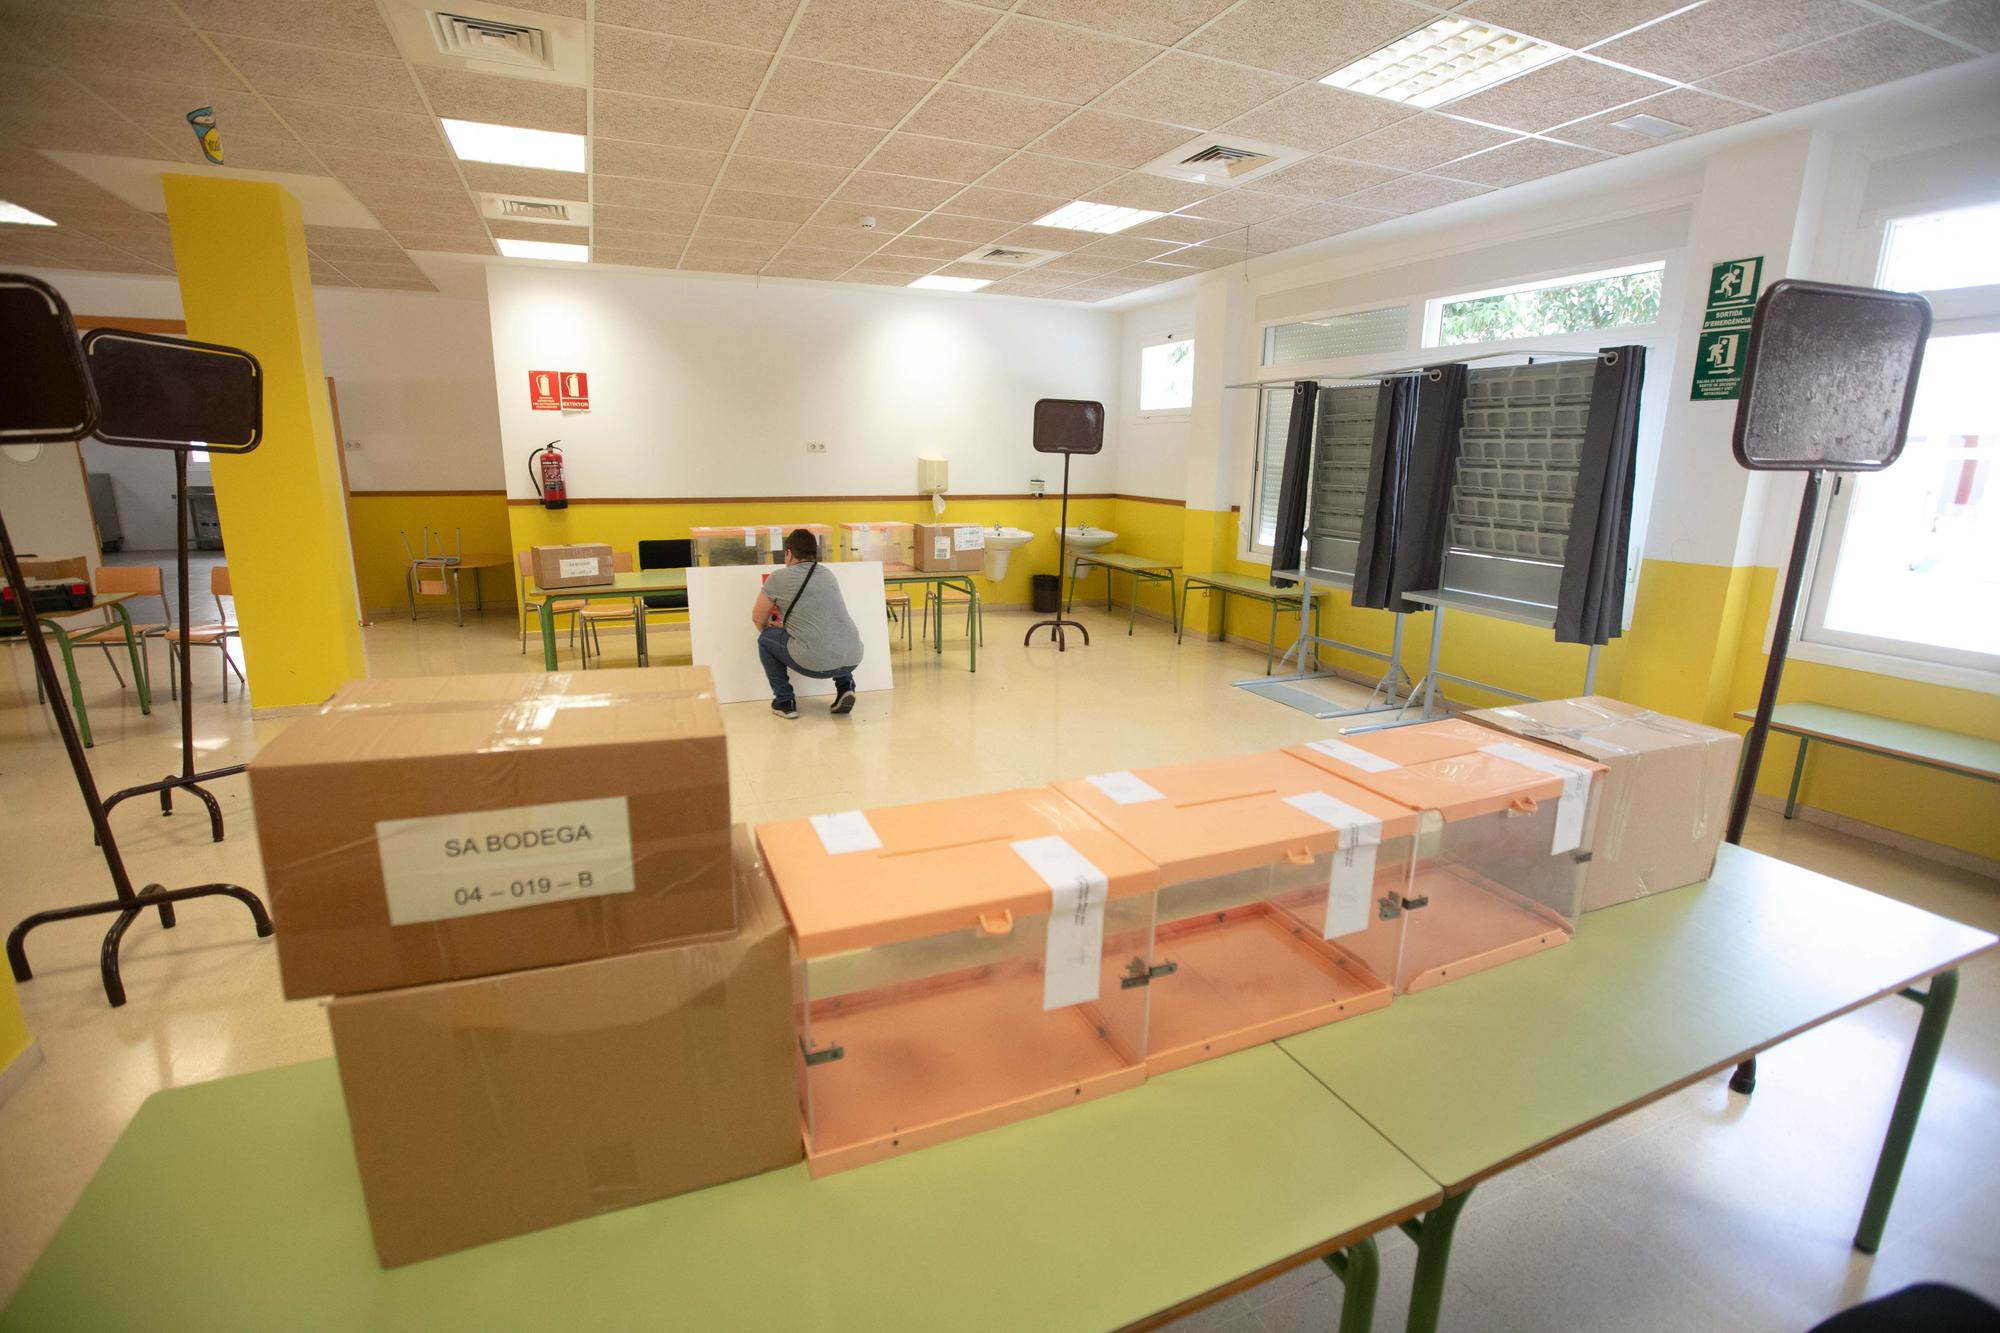 Galería de imágenes de los preparativos para las elecciones del 28M